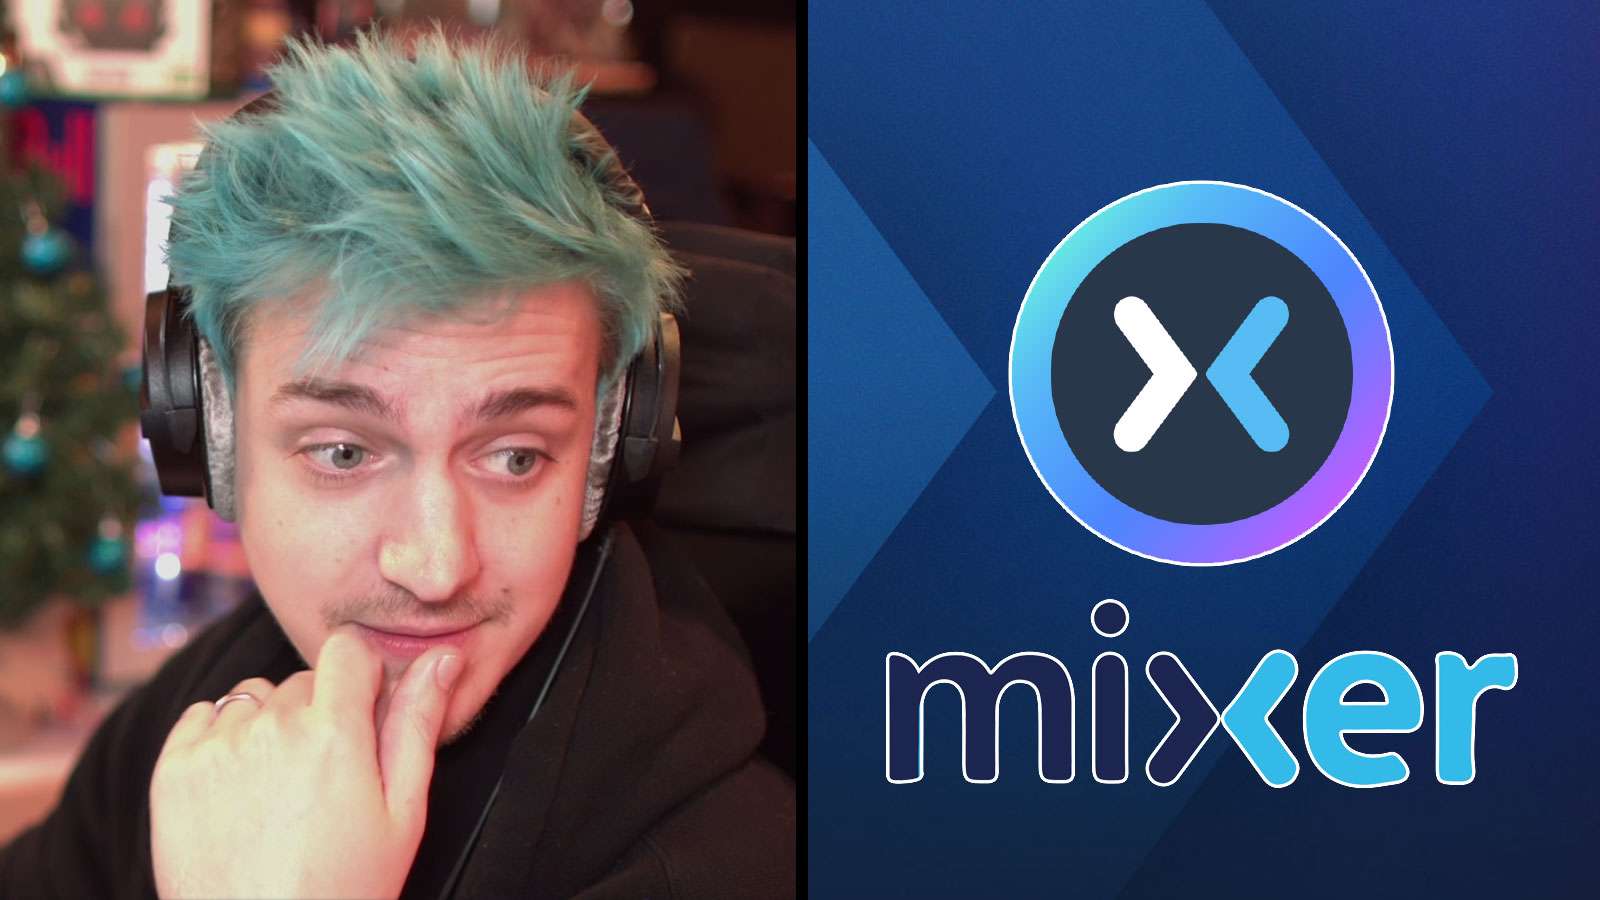 Mixer: Ninja / Mixer